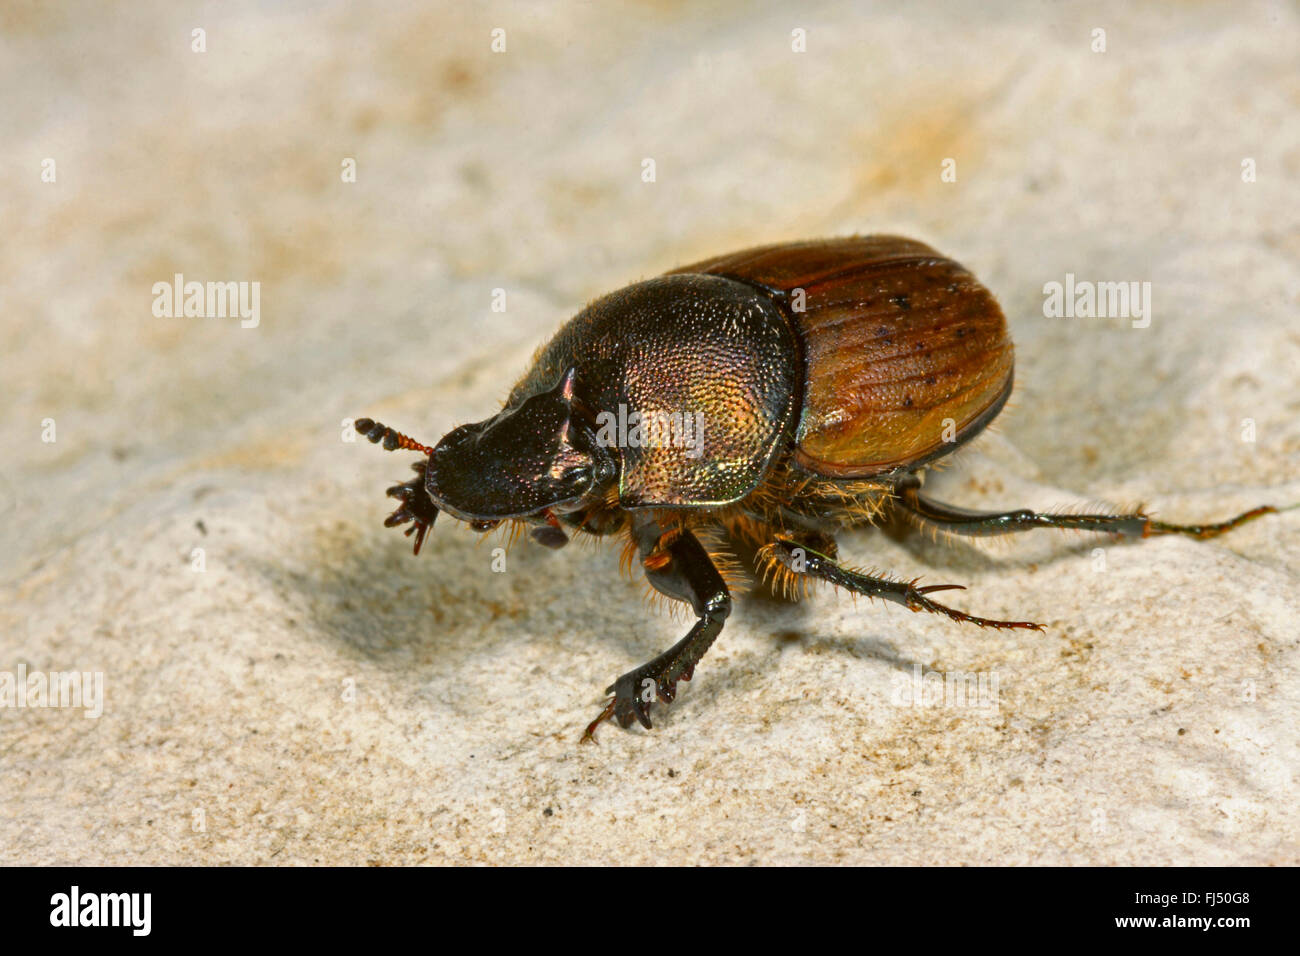 Escarabajos del estiércol (Onthophagus coenobita), sentada sobre una piedra, Alemania Foto de stock